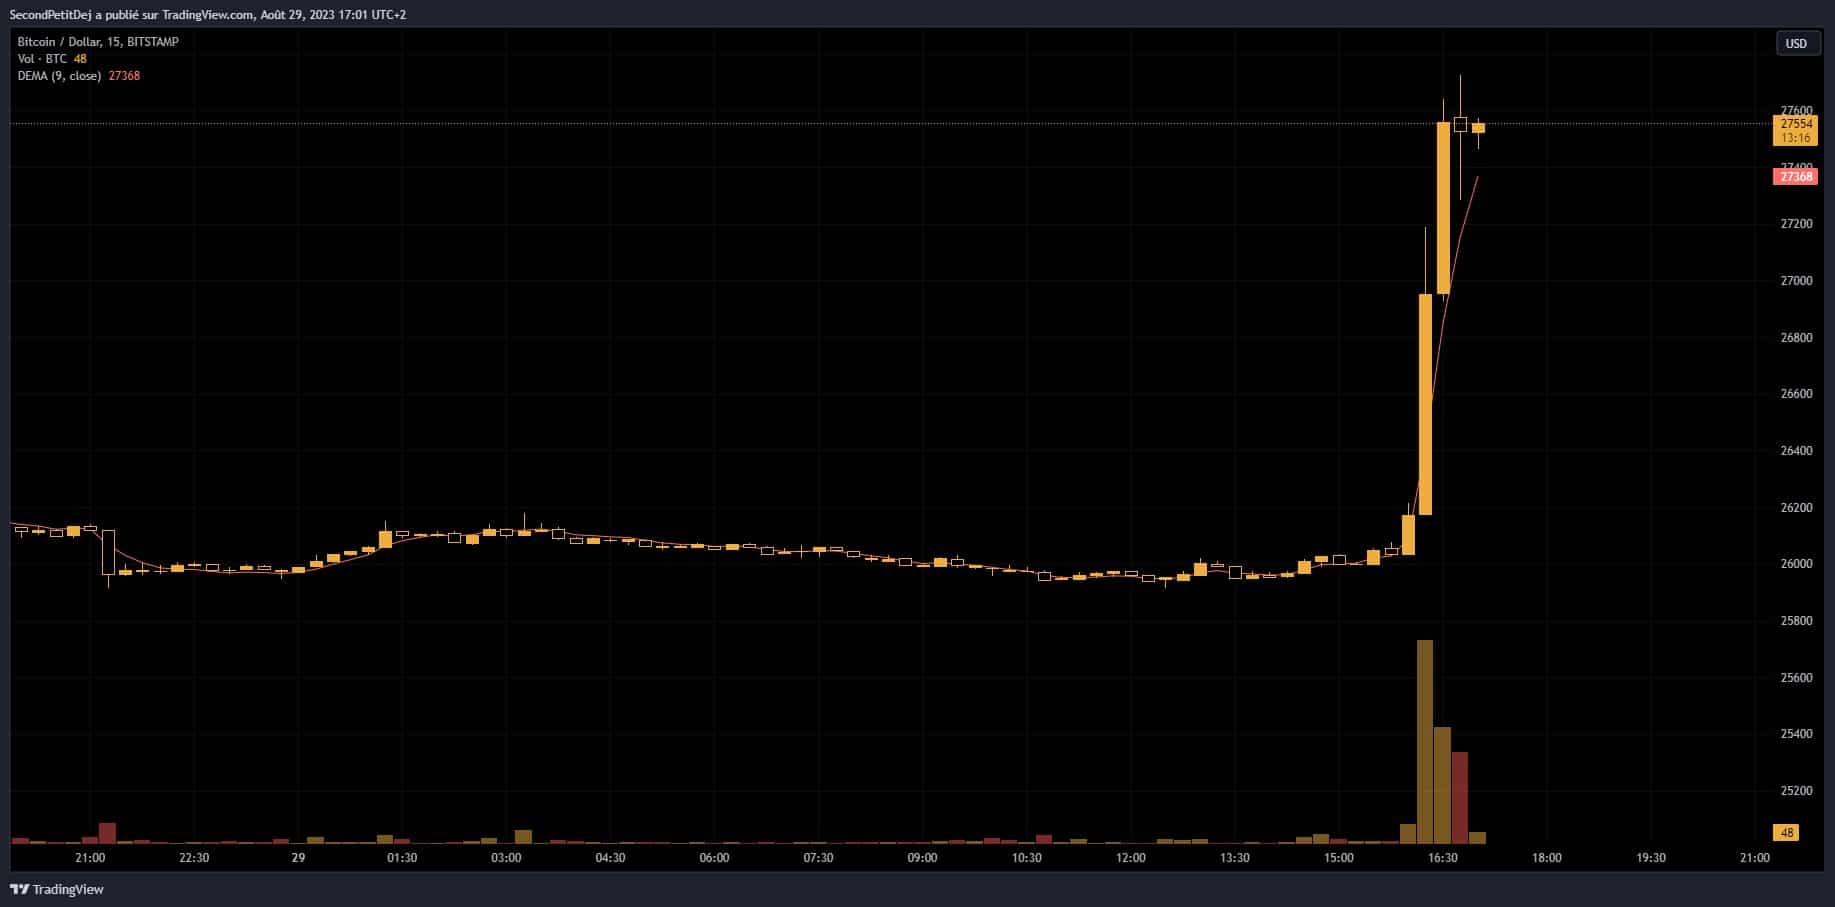 Bitcoin price (BTC/USD pair)